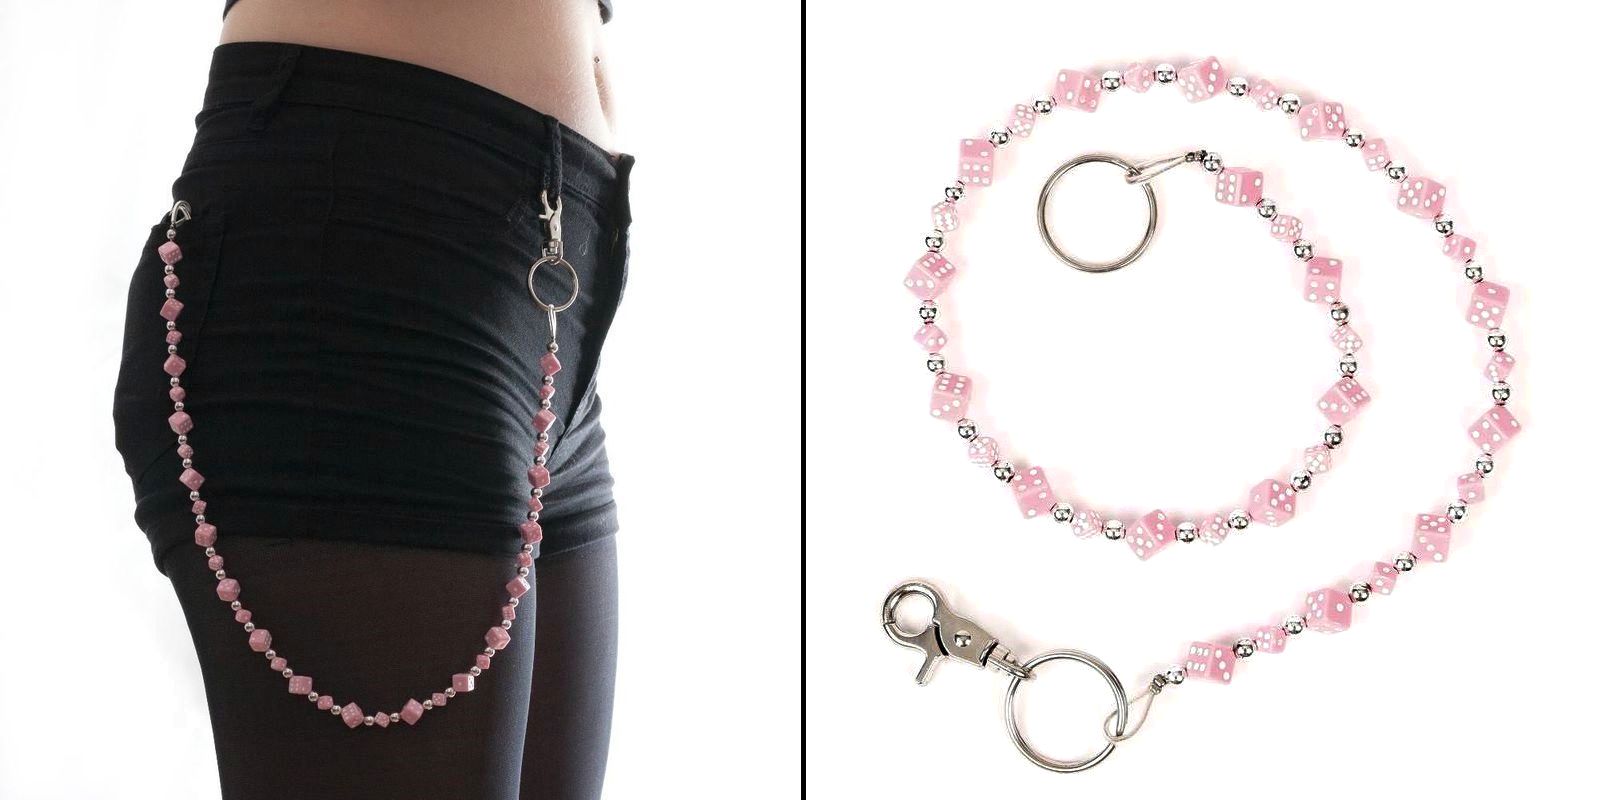 Řetěz na kalhoty s růžovými kostkami